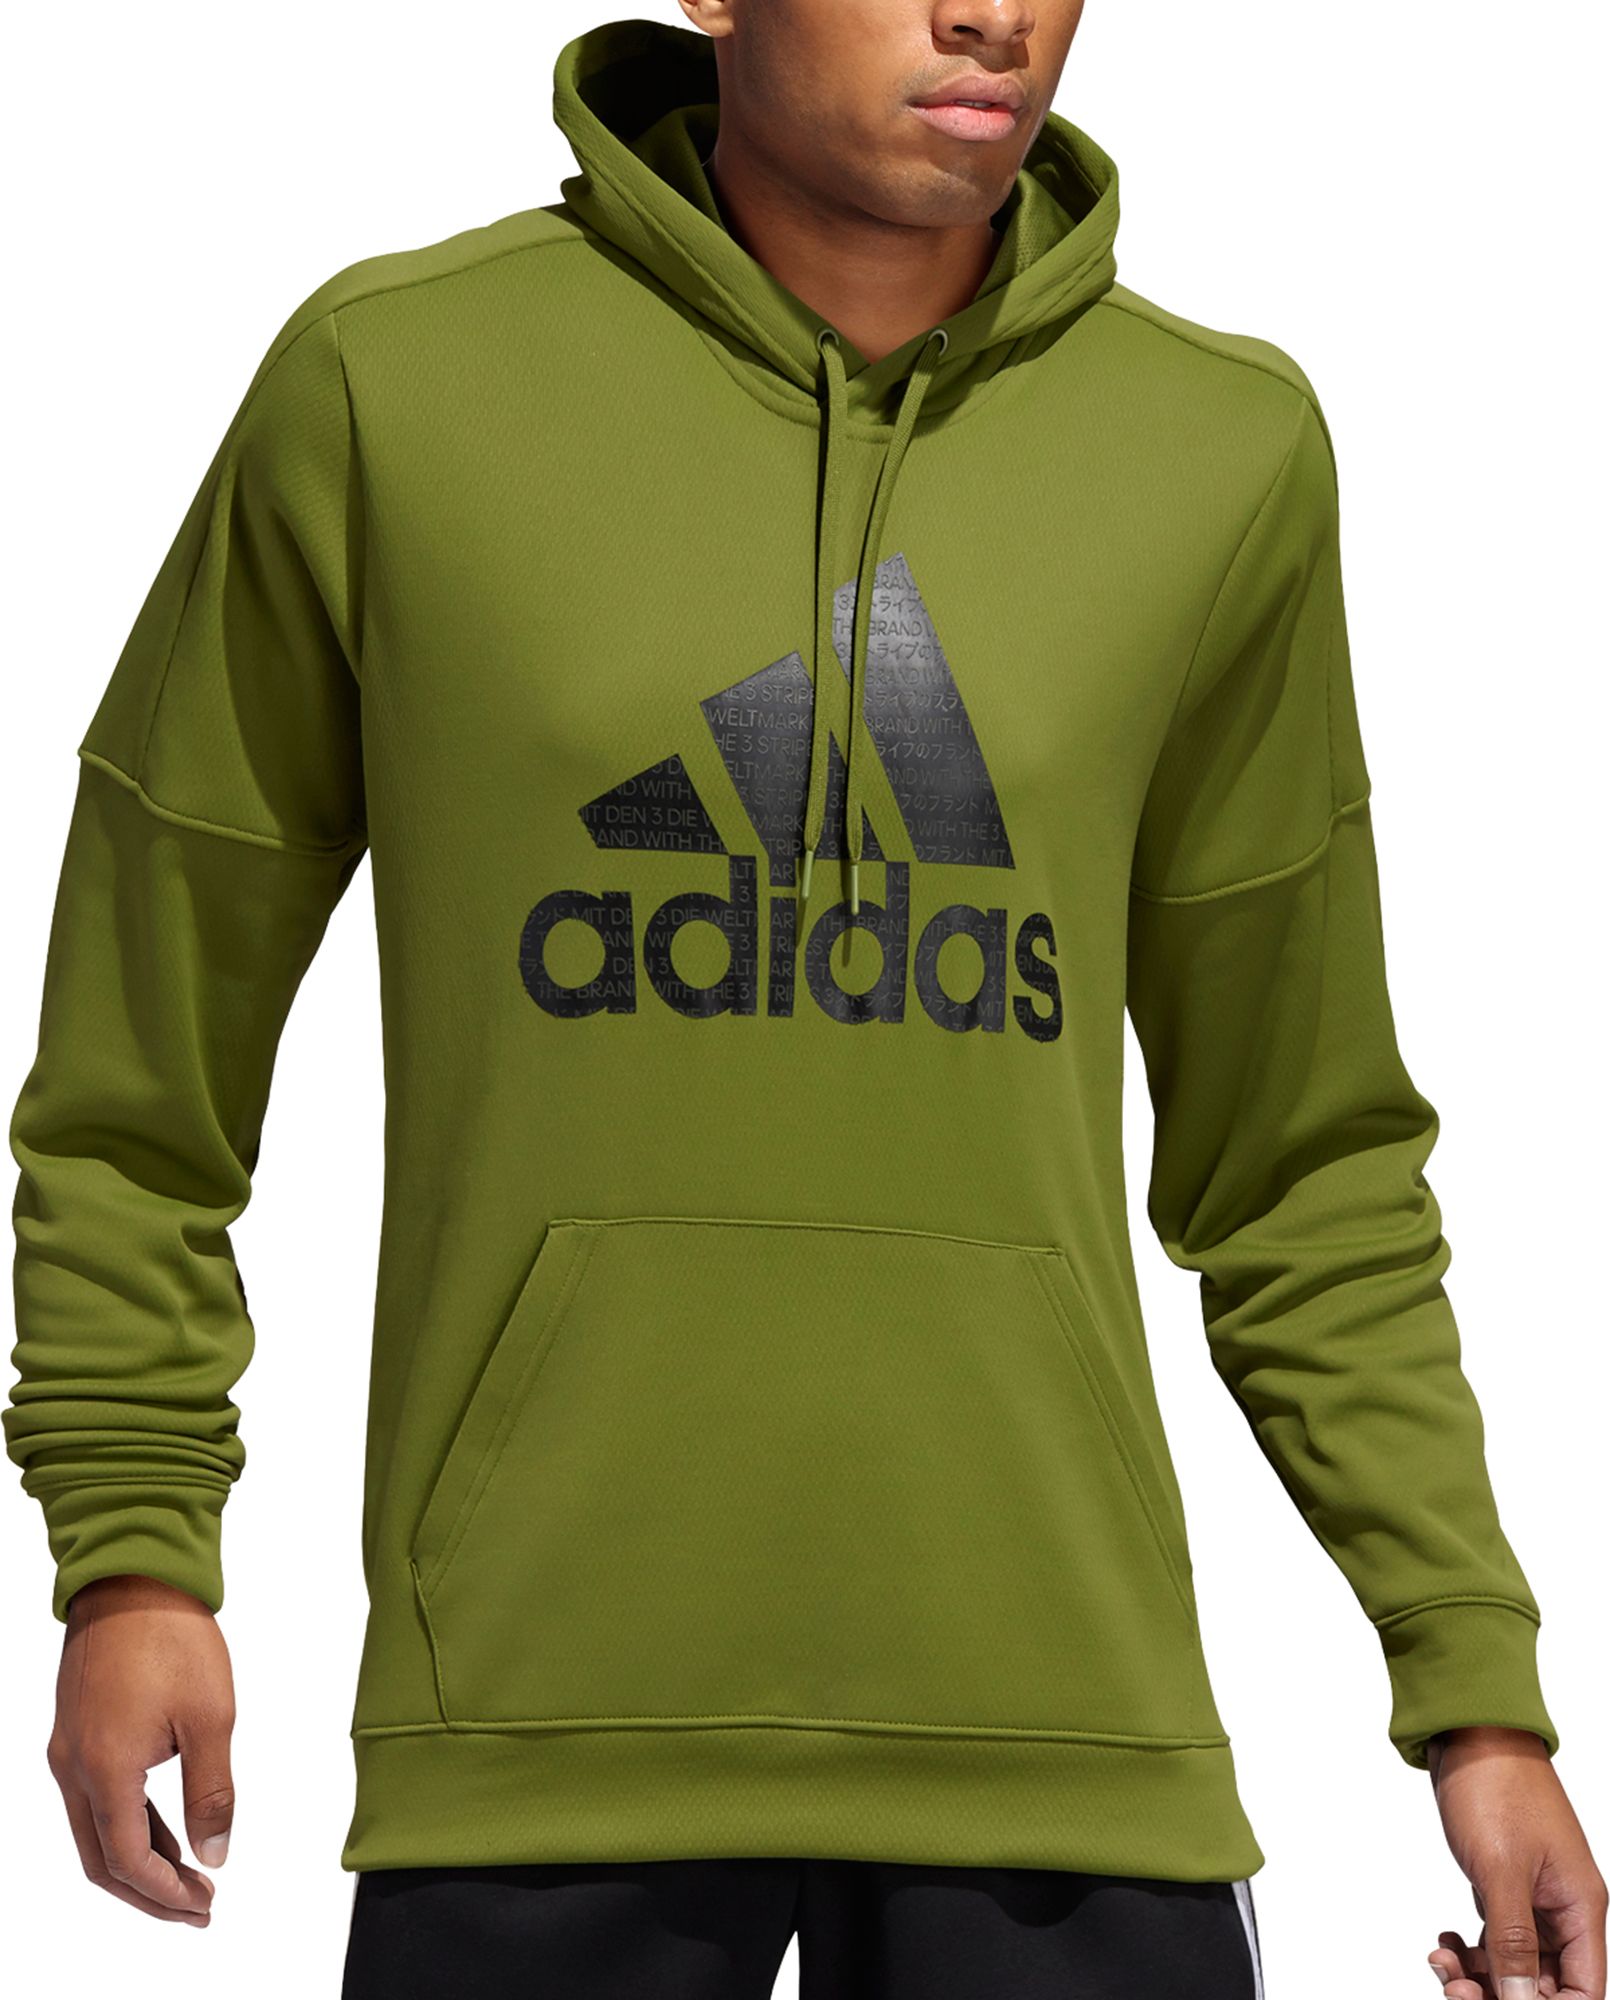 adidas team issue badge of sport hoodie men's